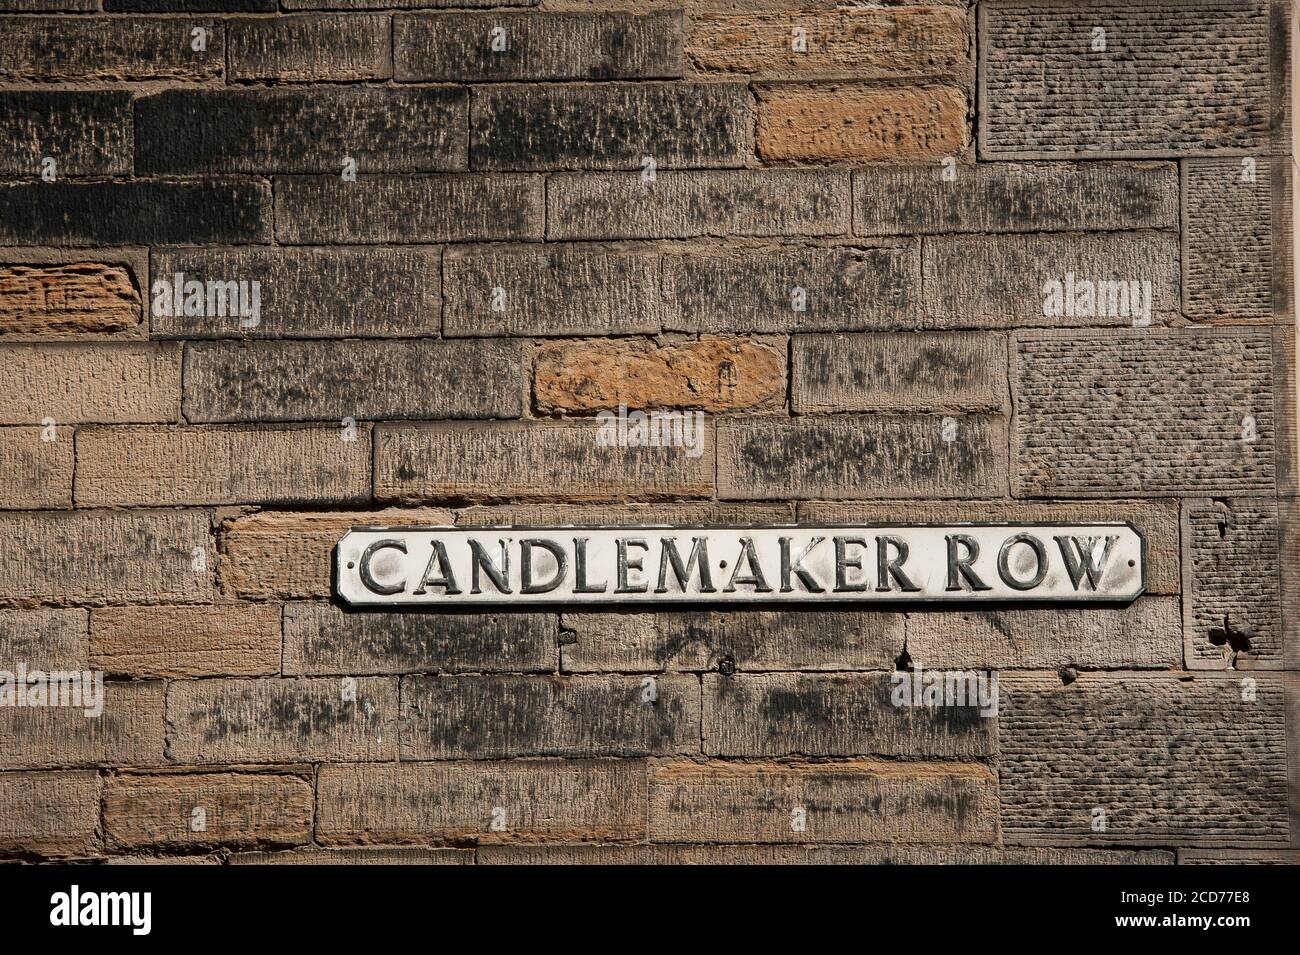 Melden Sie sich in der Candlemaker Row in der Stadt Edinburgh, Schottland an. Stockfoto